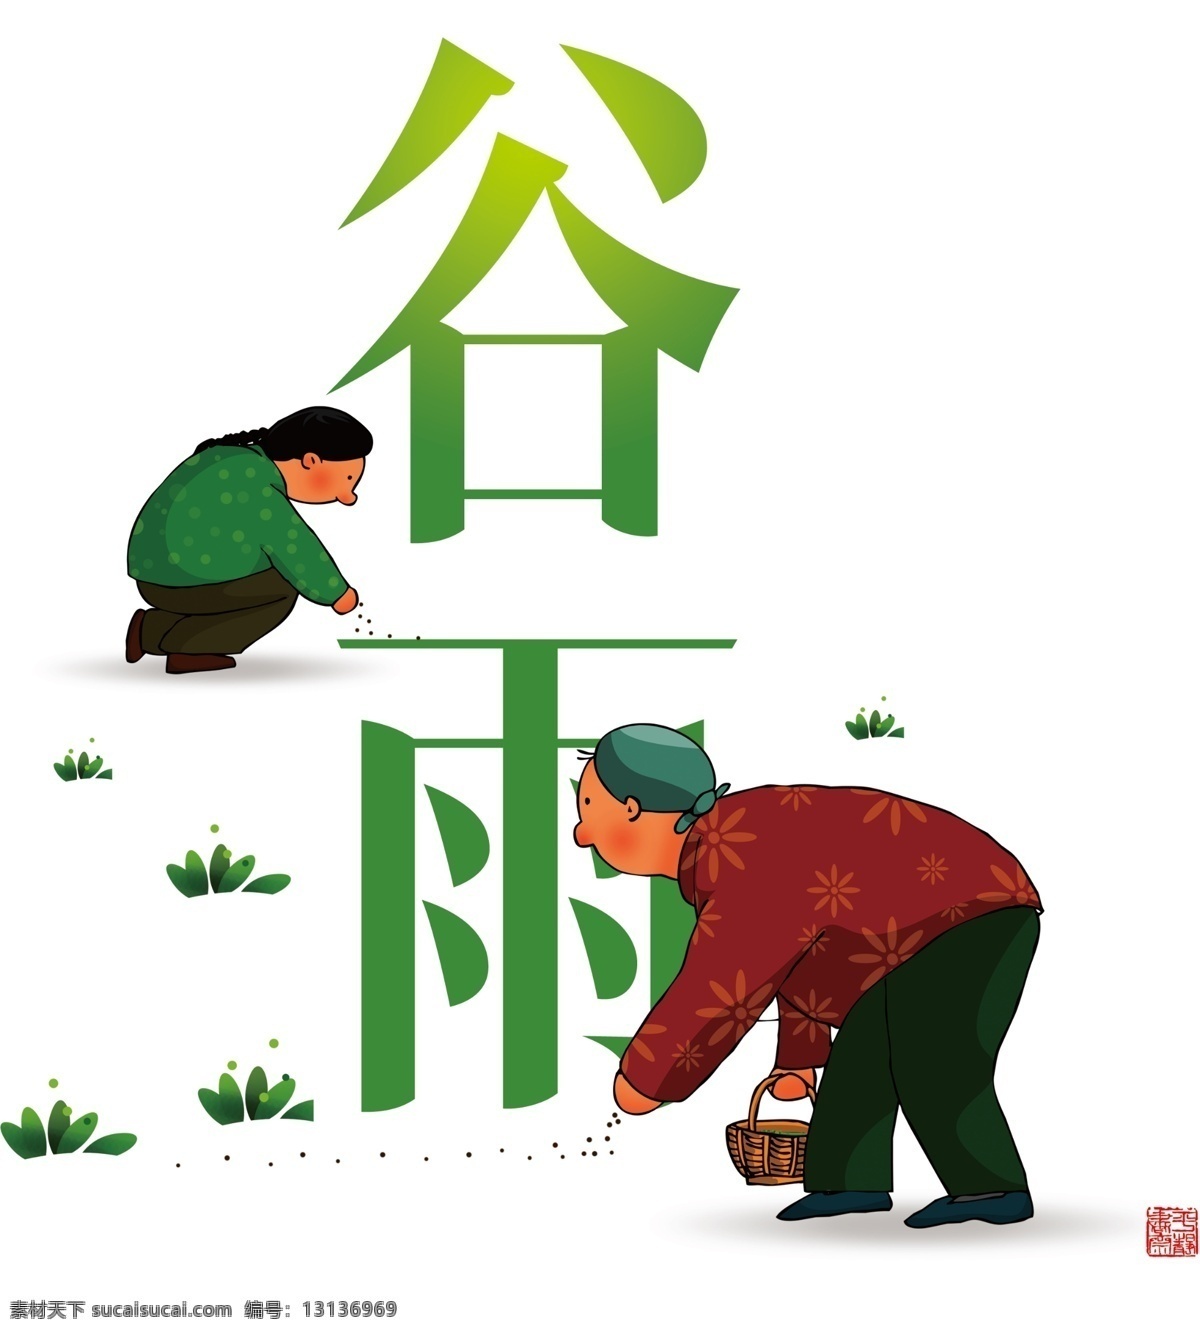 中国 风 农民 谷雨 节气 元素 节日 植物 农作物 人物 种子 节气元素 红色印章